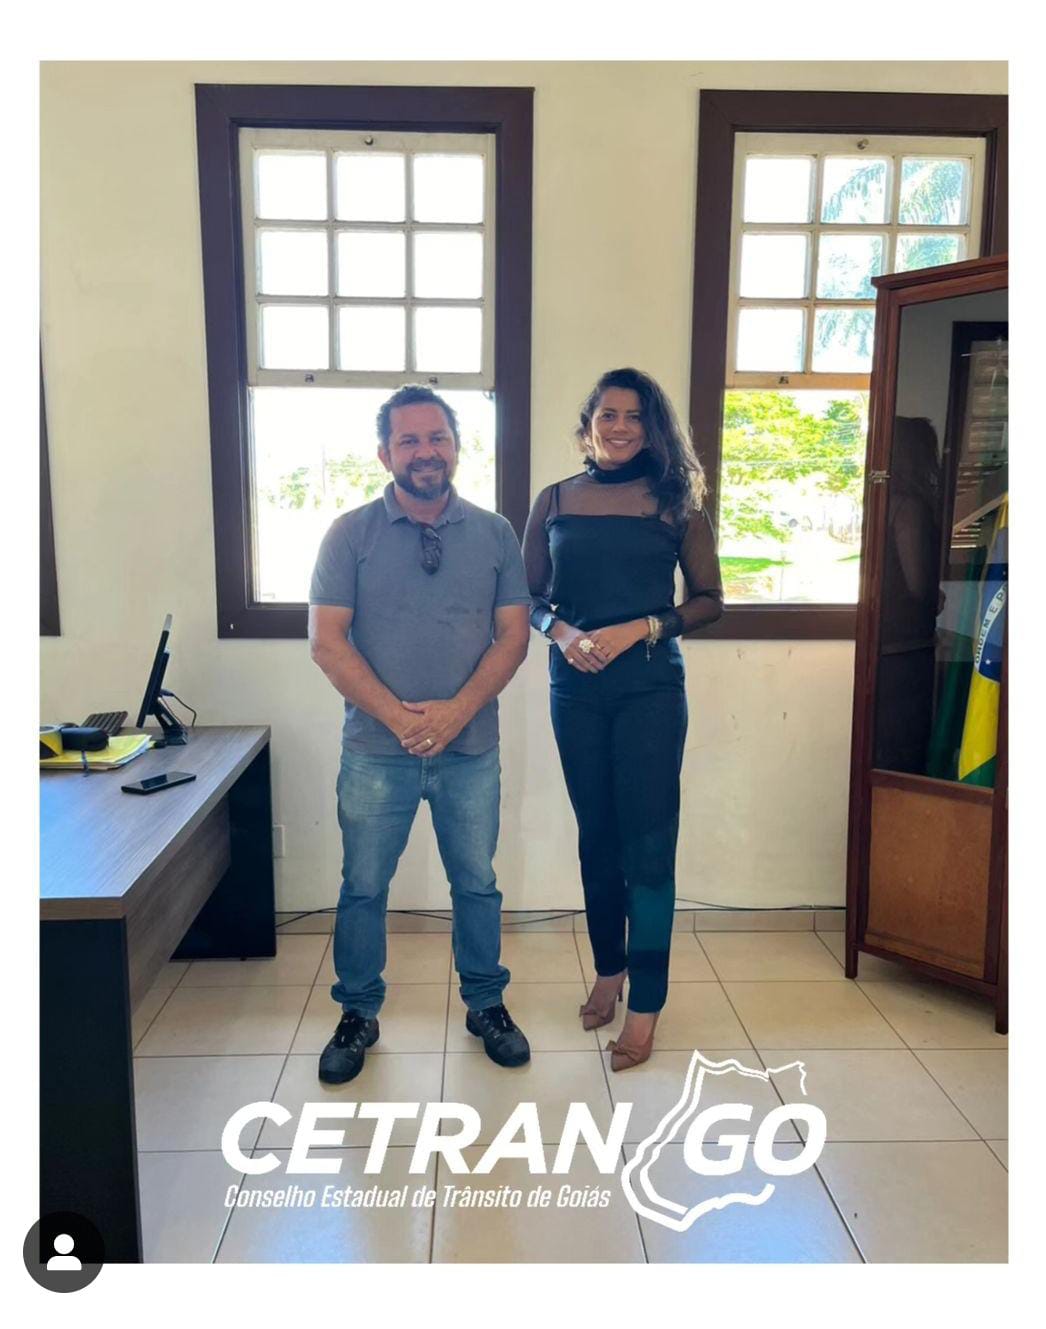 O Cetran/Go fez uma visita ao órgão executivo Municipal de Pirenópolis-GO, recebidos pelo Superintendente Fábio Cardoso.